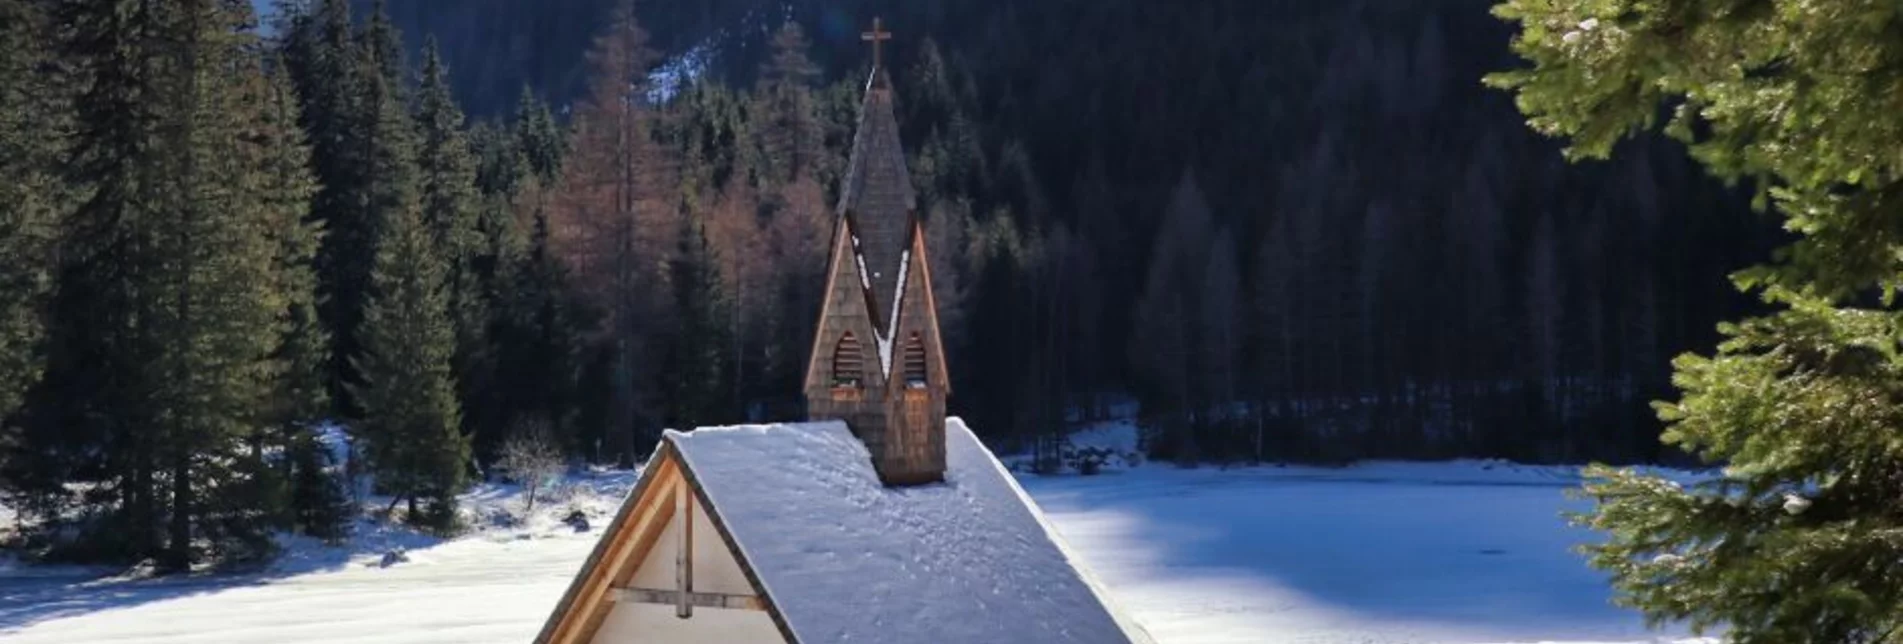 Winterwandern Winterwanderung um den Ingeringsee - Touren-Impression #1 | © Erlebnisregion Murtal